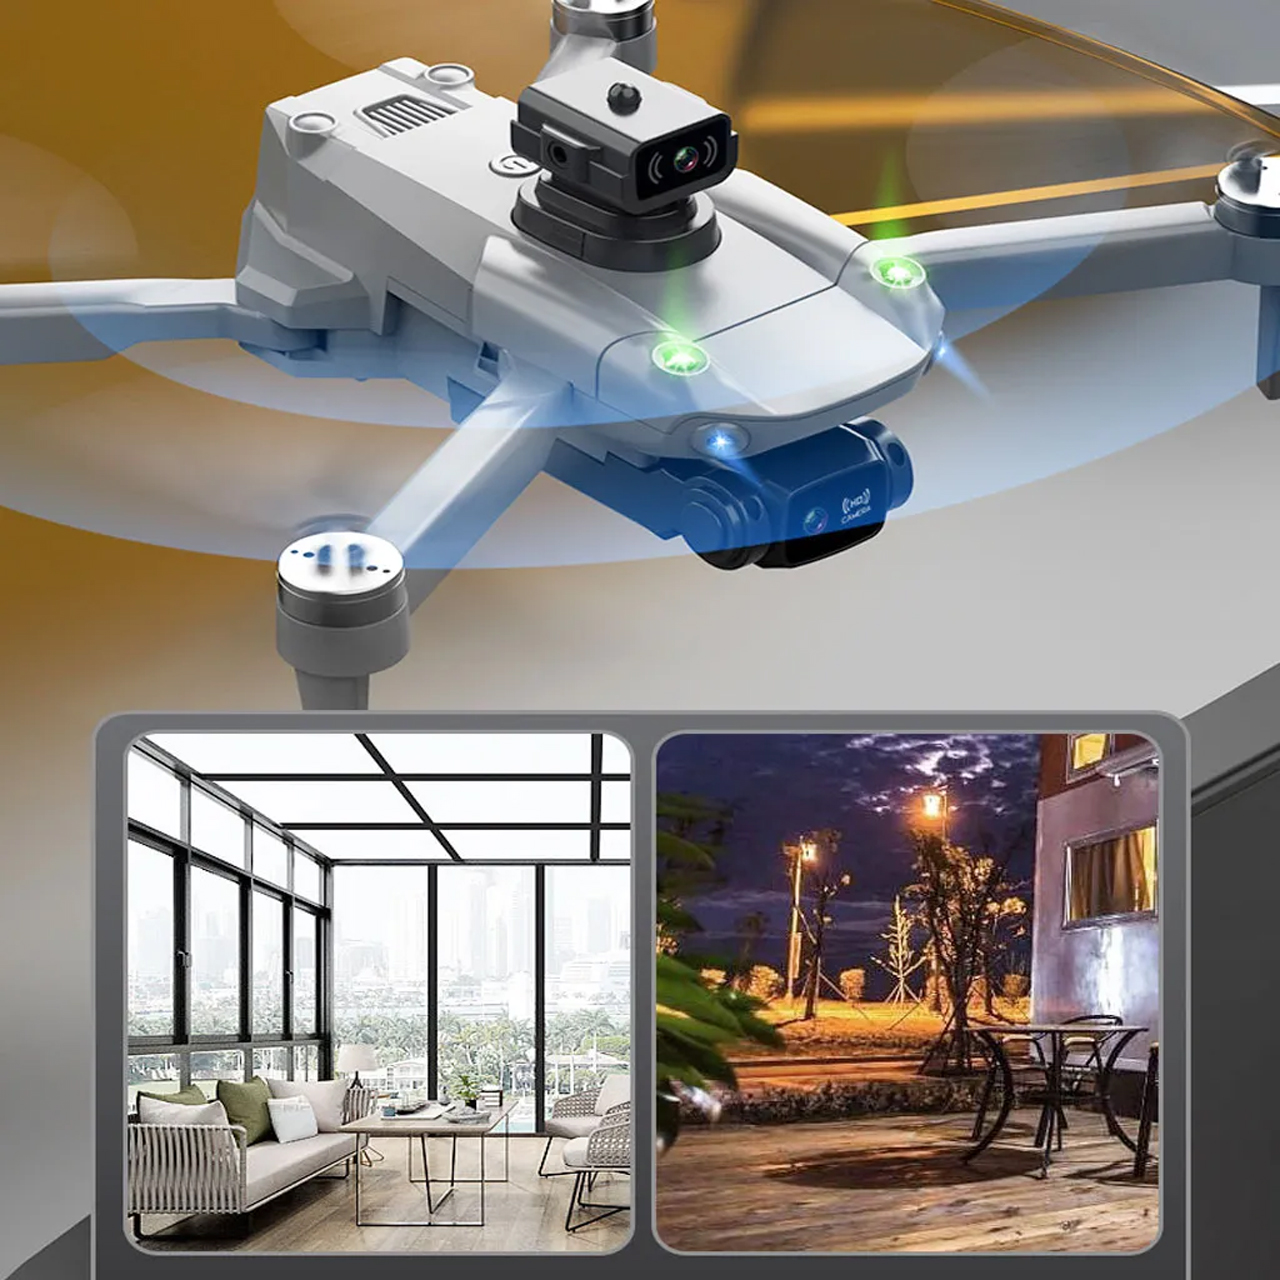 Flycam mini giá rẻ camera kép 4K K998 máy bay điều khiển từ xa drone S11 Pro có cảm biến tránh va chạm, bay 25 phút, truyền hình ảnh trực tiếp về điện thoại, G.P.S tự quay trở về, động cơ không chổi than - hàng chính hãng